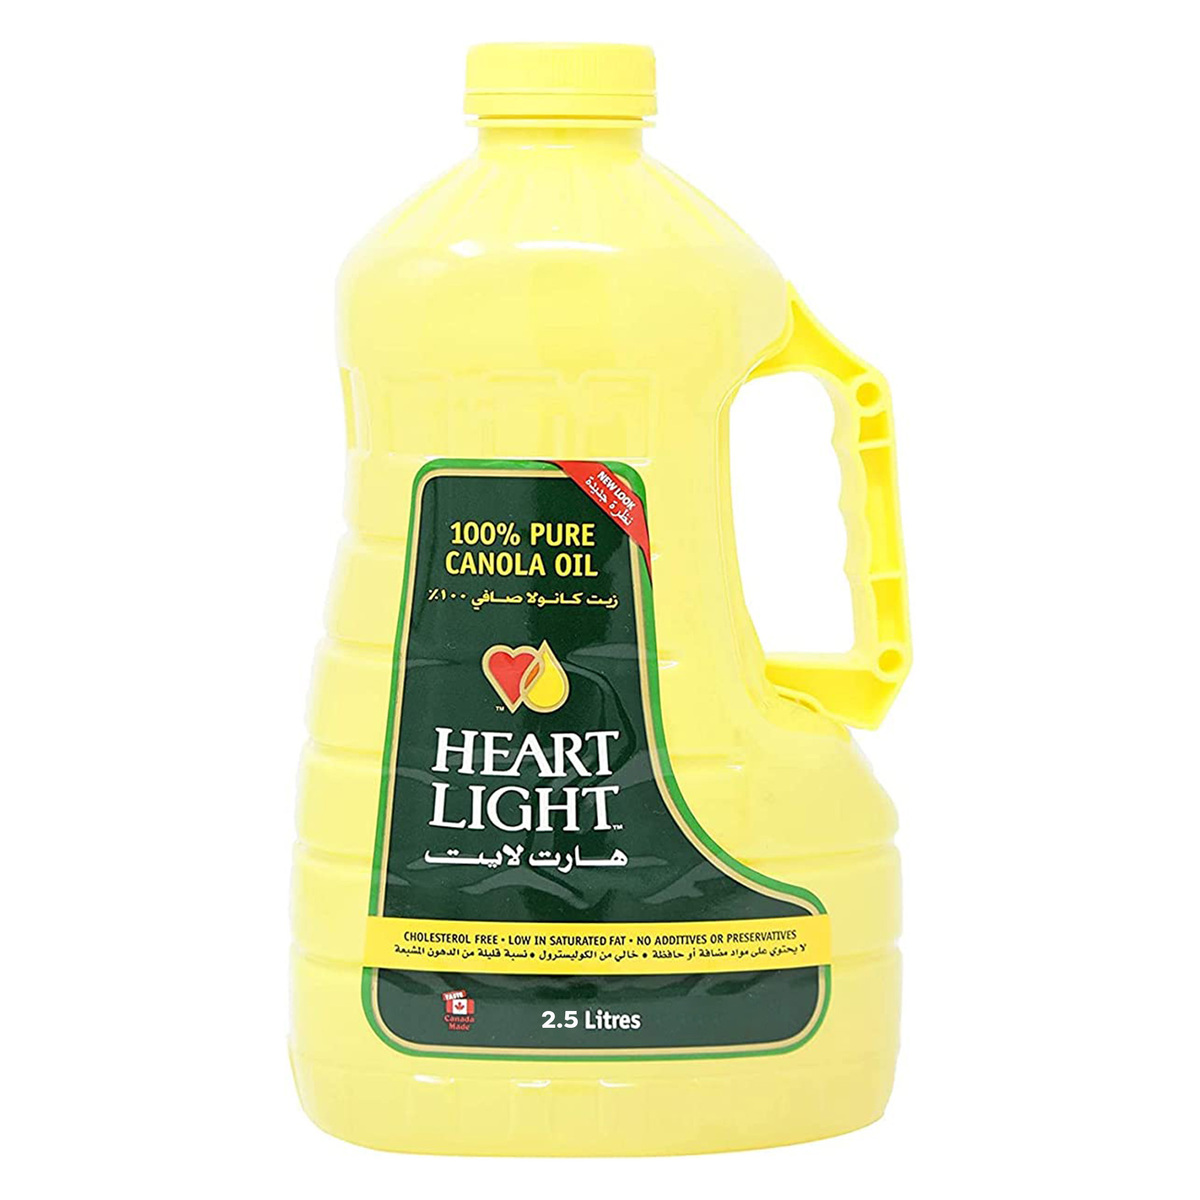 Heart Light Canola Oil Value Pack 2.5 Litres